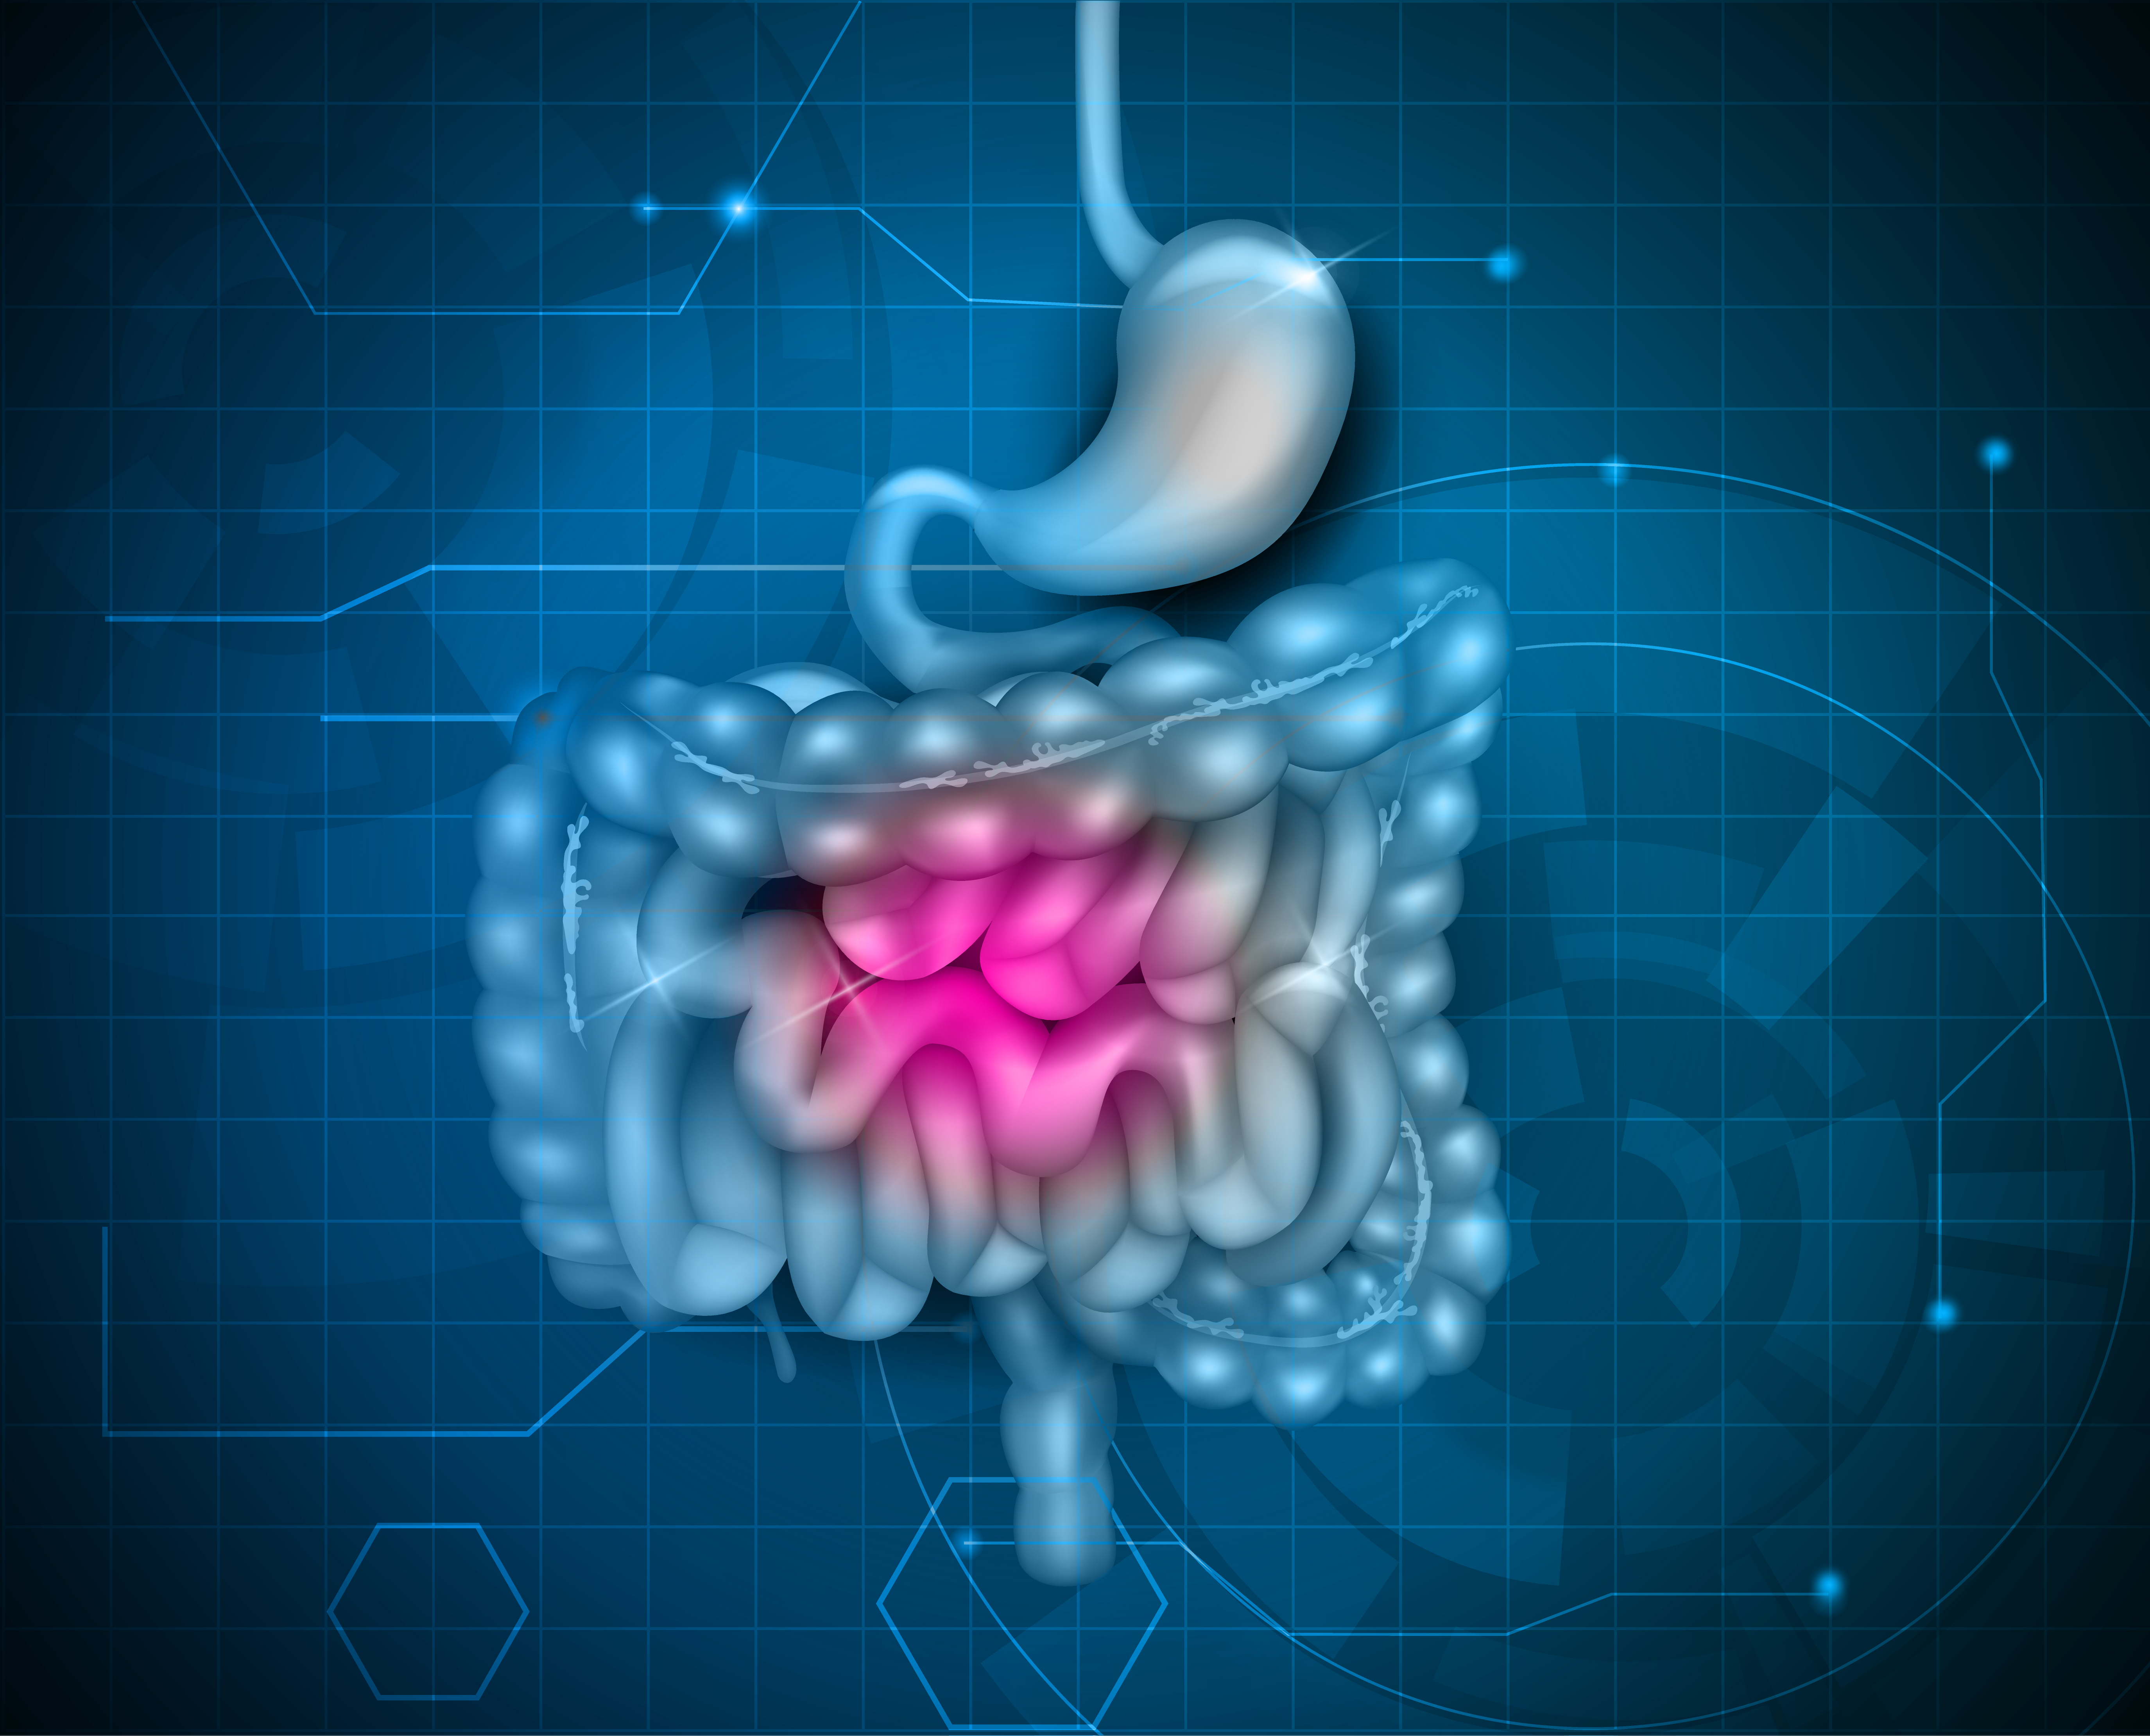 aparato digestivo virtual con zona del intestino en otro color 